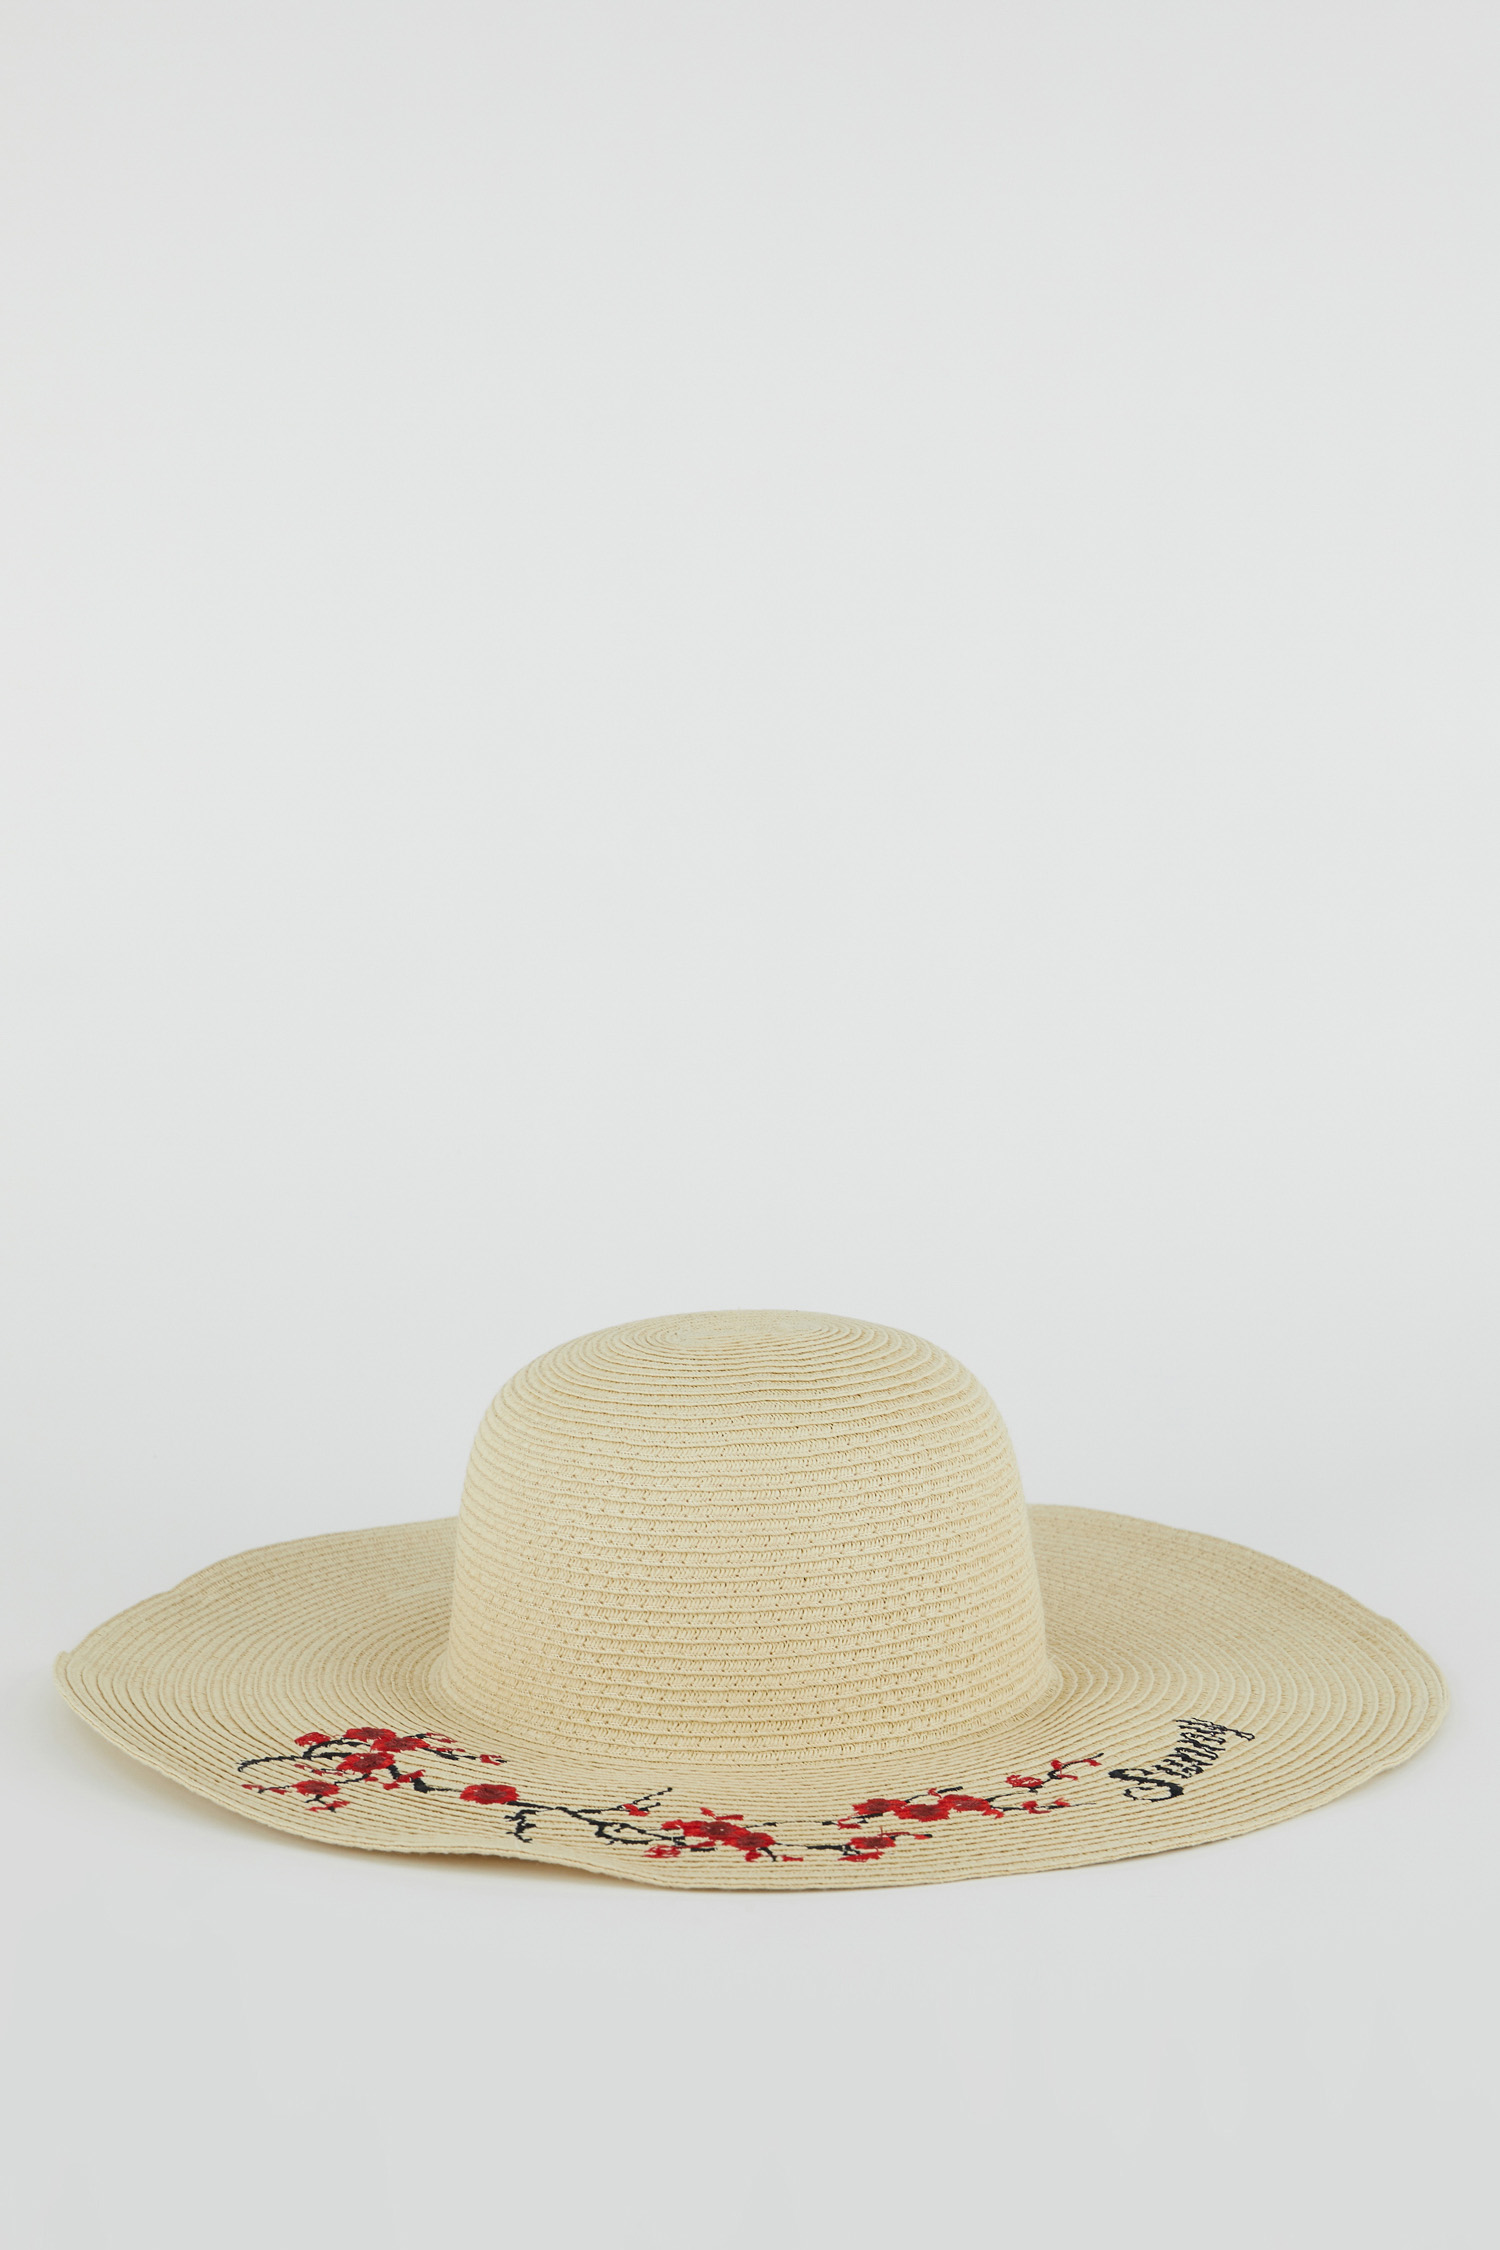 DeFacto Flower Pattern Straw Hat